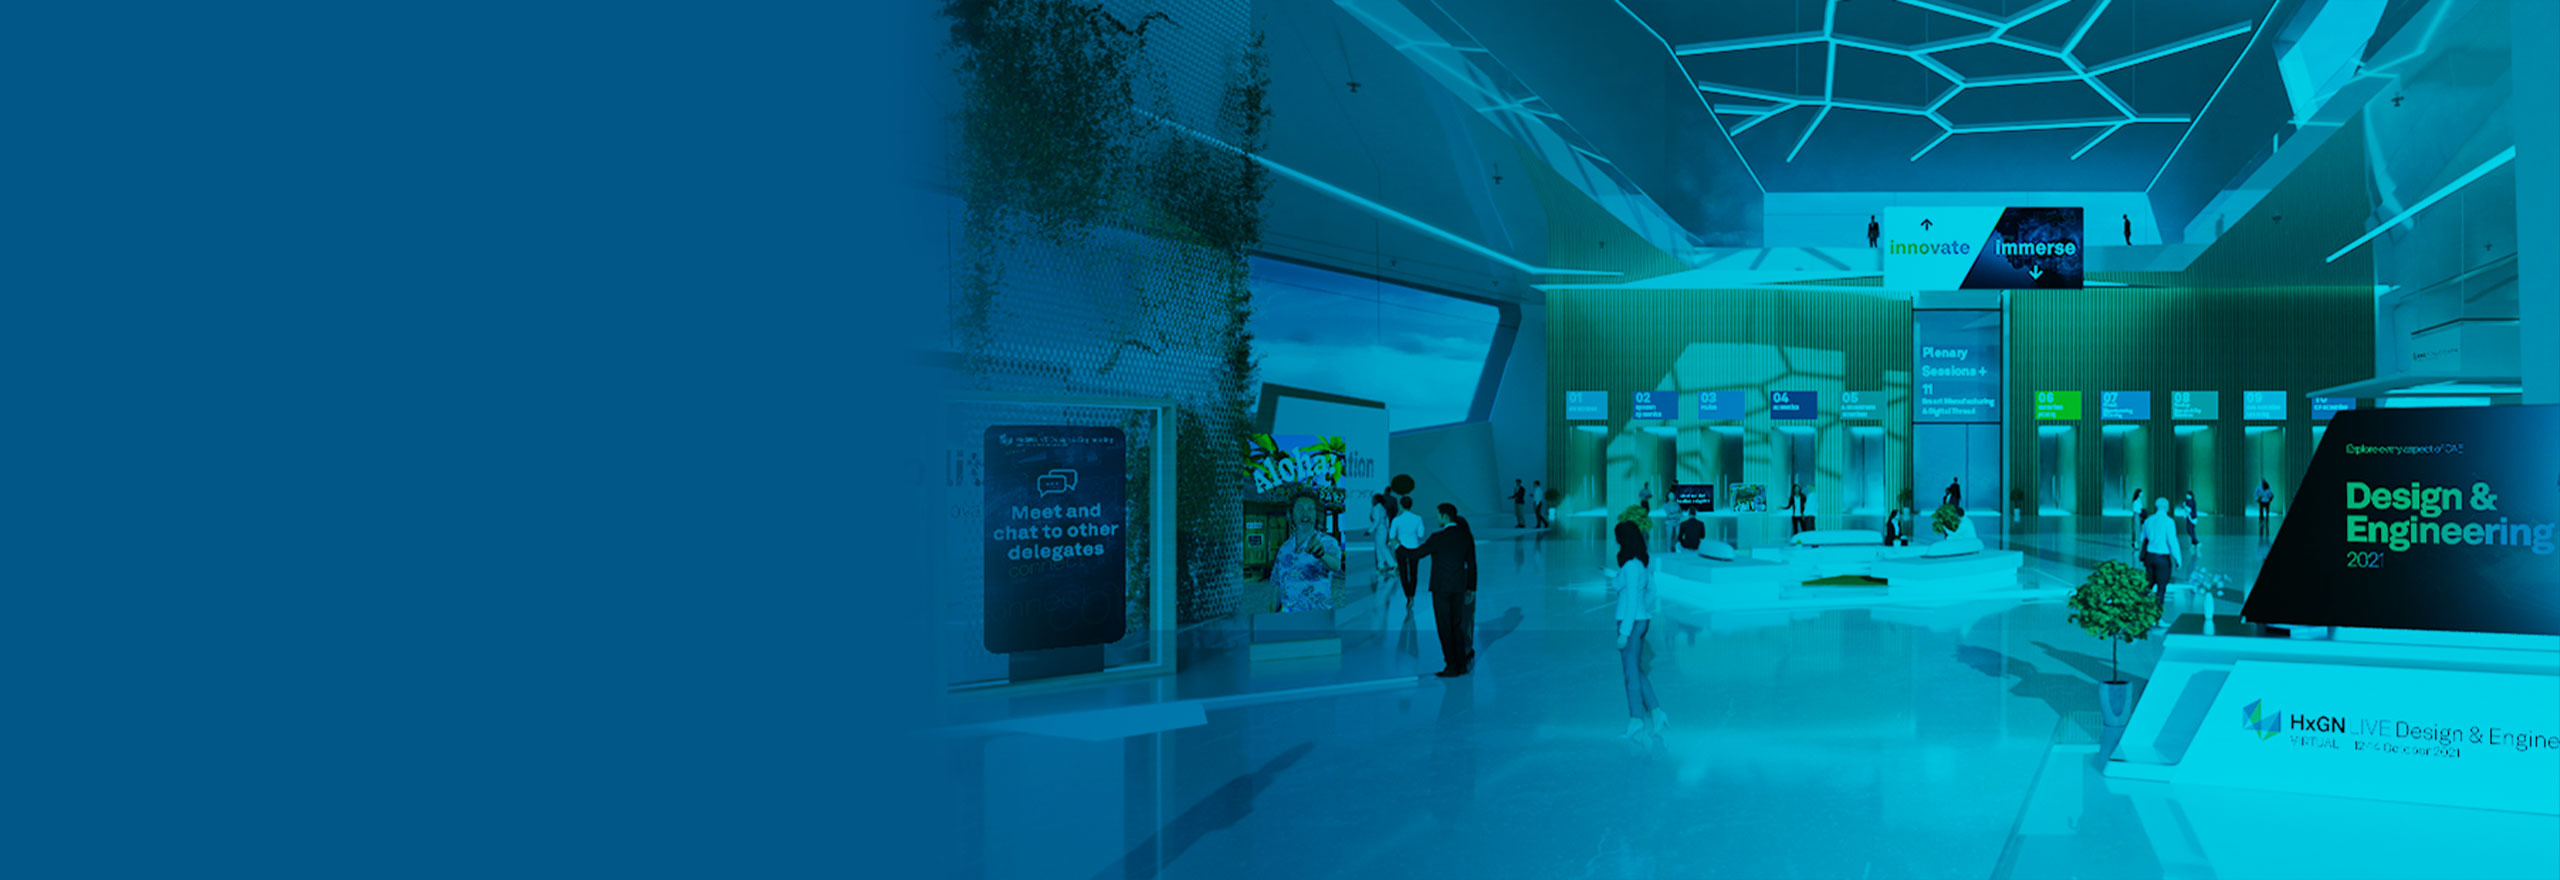 Imagen del pabellón del evento virtual de HxGN LIVE Design & Engineering 2021 que muestra múltiples puertas y pantallas